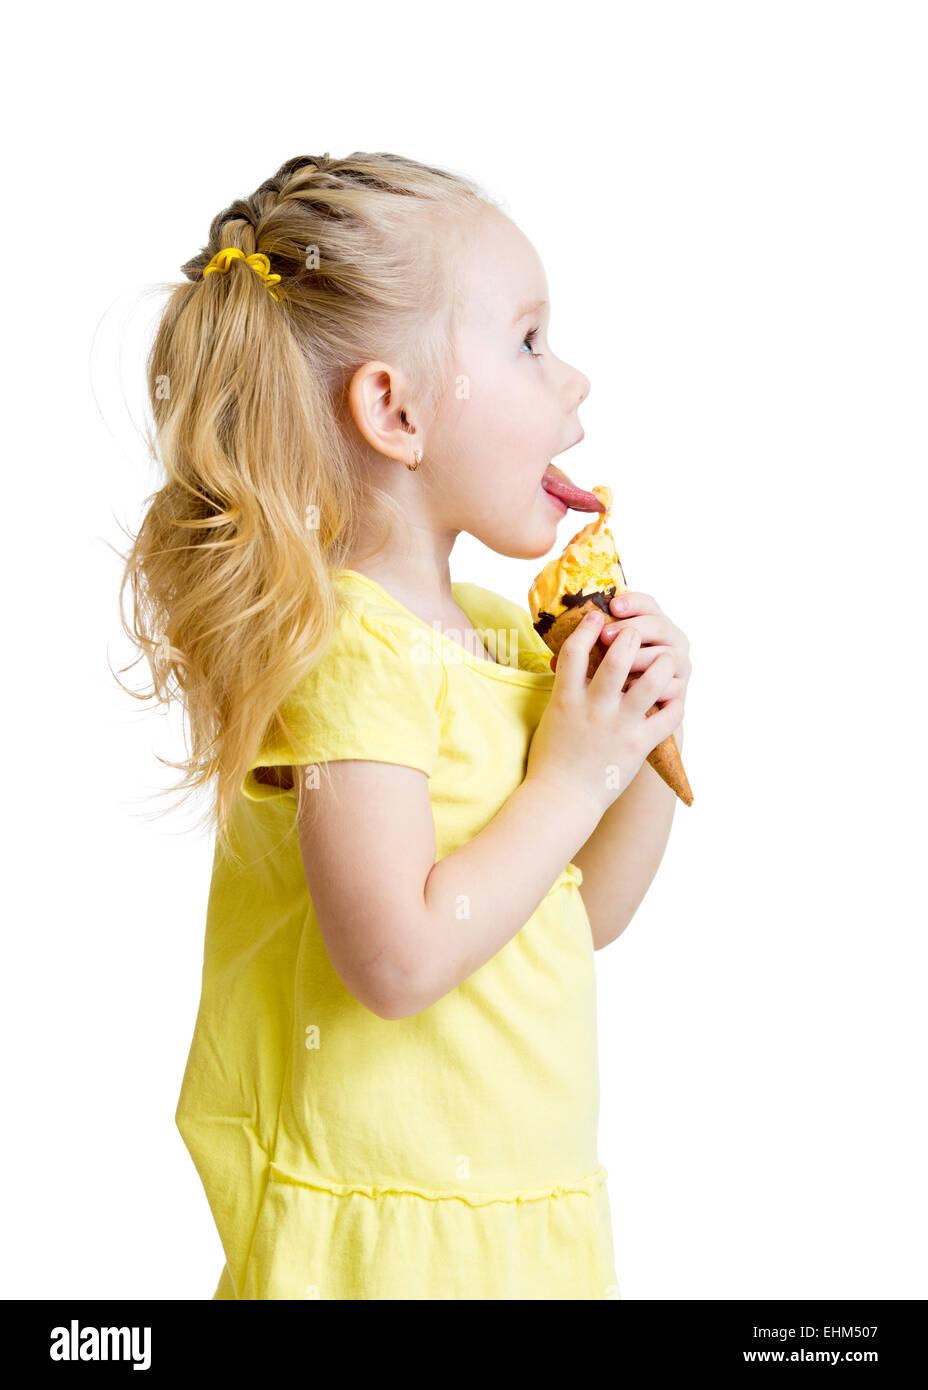 kid eating ice cream in studio isolated Stock Photo